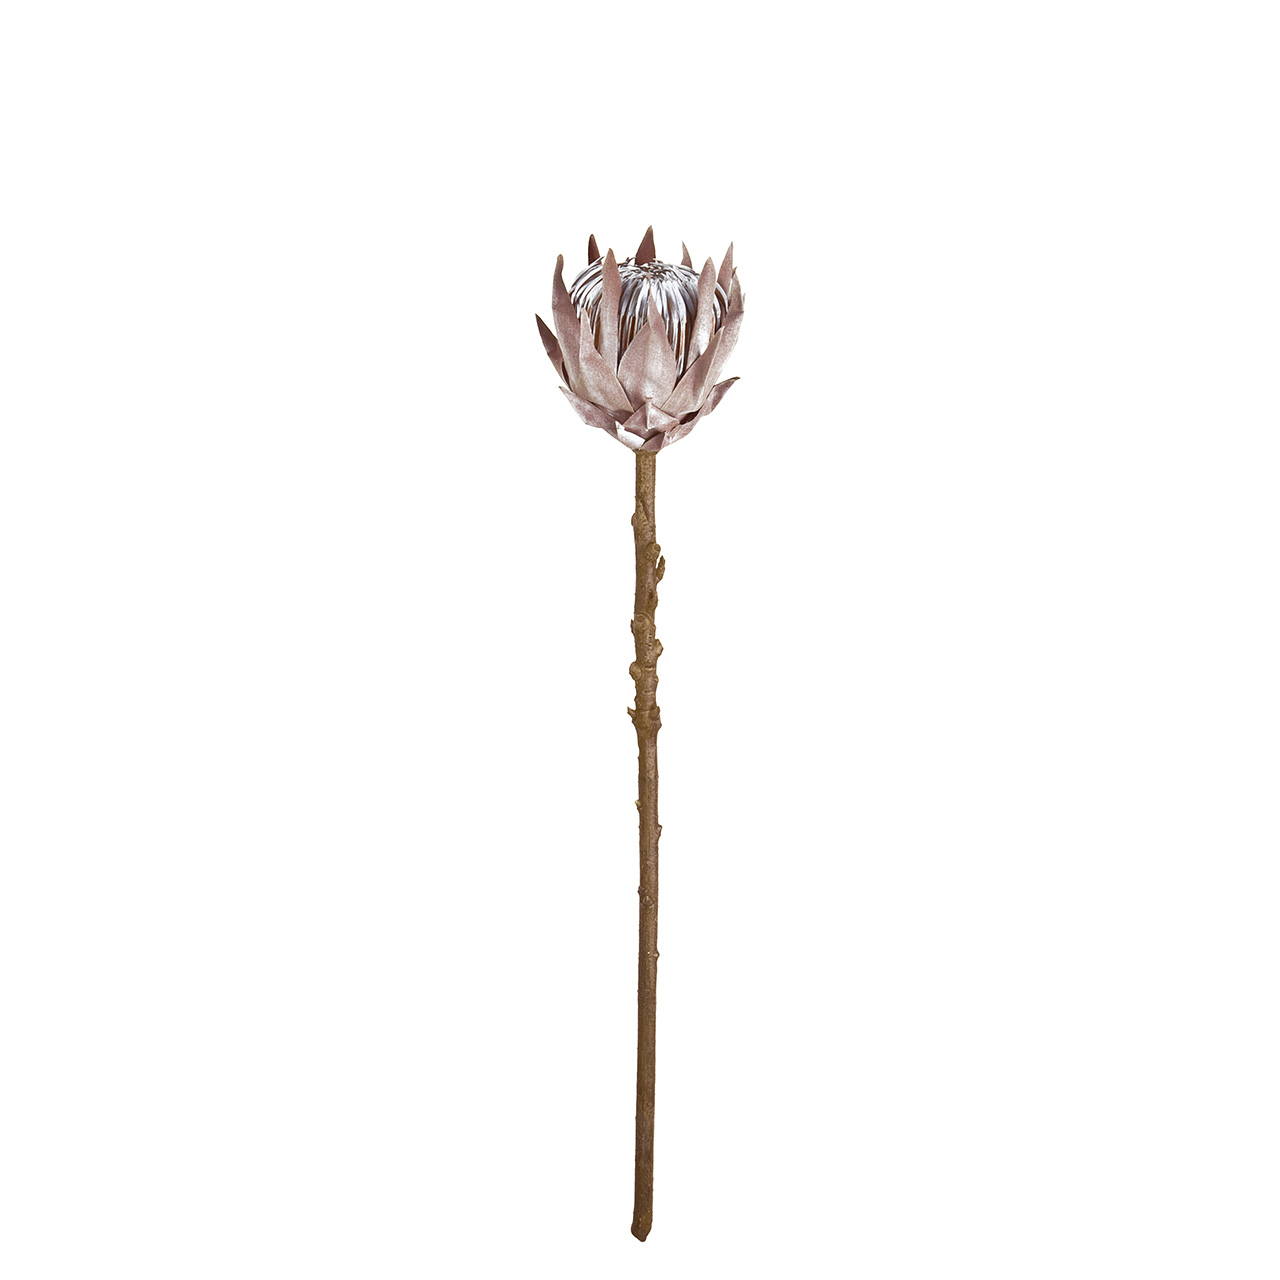 マイフラ 通販 Magiq マチュアプロテア S ベージュブラウン アーティフィシャルフラワー 造花 Fm ワイルドフラワー 花径 約12 長さ 約50cm ベージュブラウン Magiq アーティフィシャルフラワー 造花 全国にmagiq 花器 花資材などをお届けします